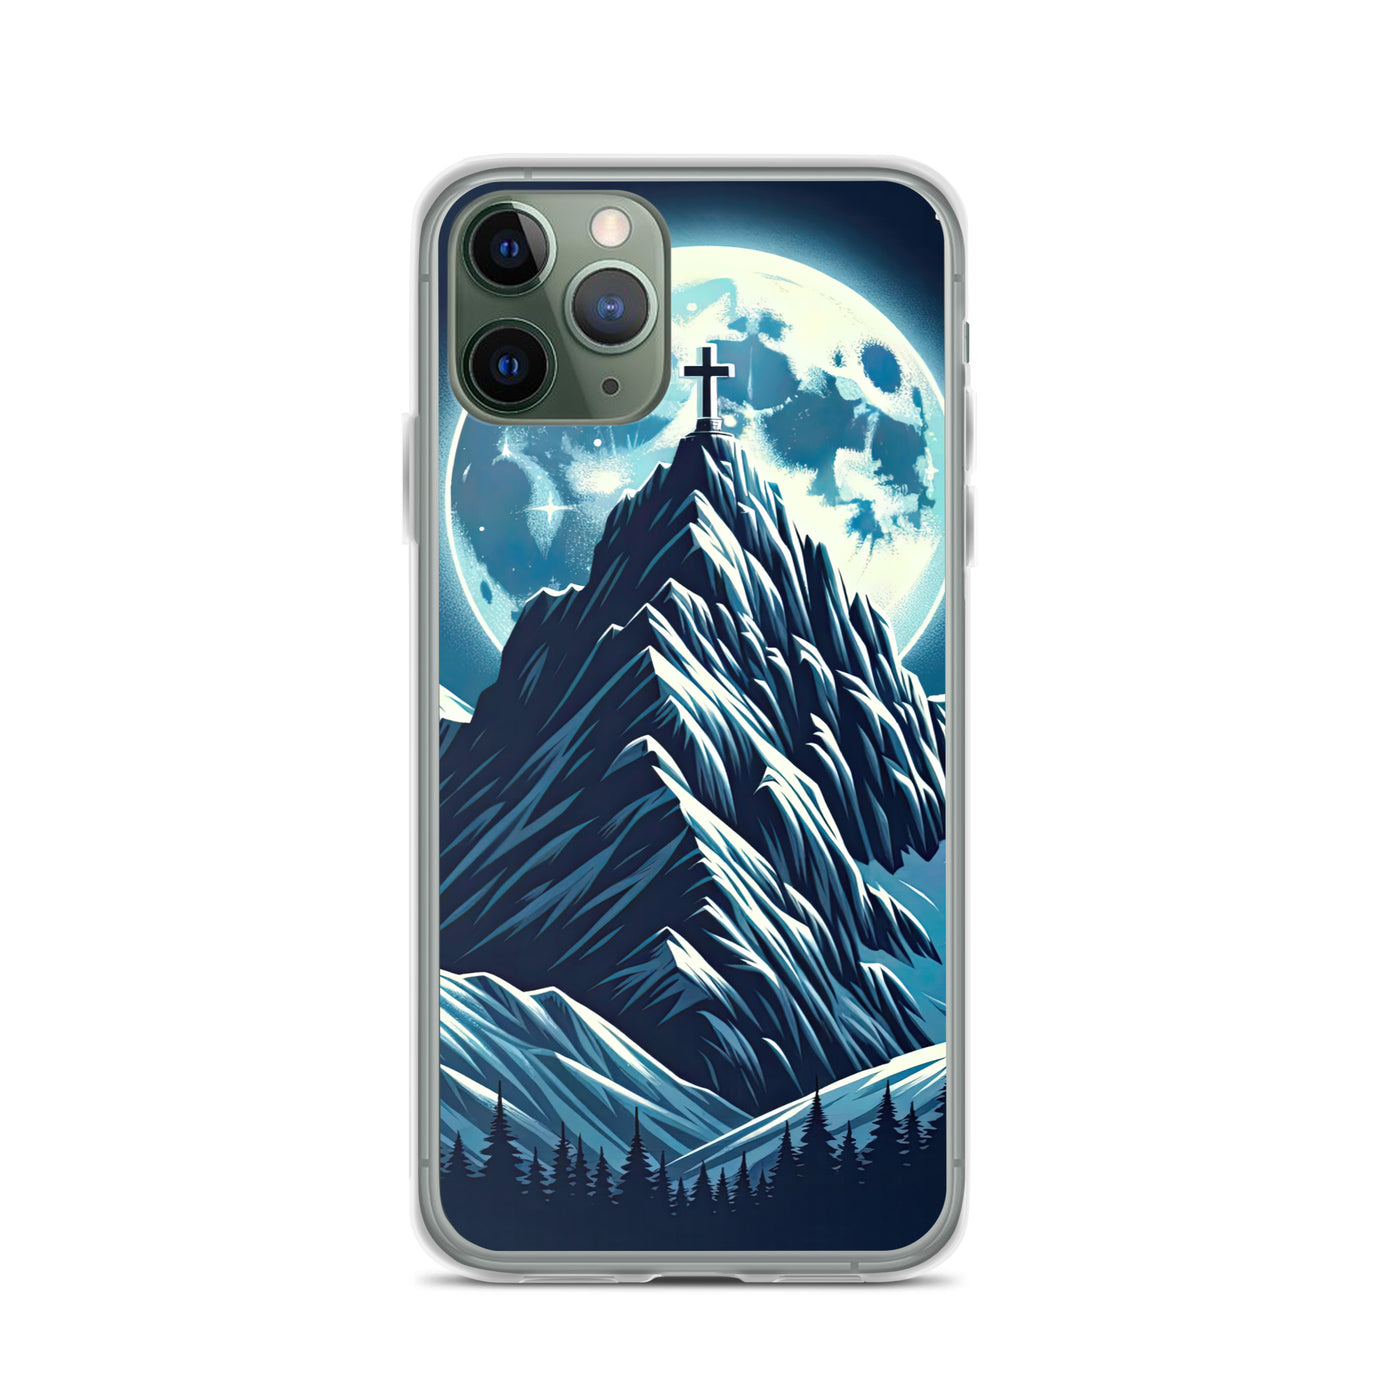 Mondnacht und Gipfelkreuz in den Alpen, glitzernde Schneegipfel - iPhone Schutzhülle (durchsichtig) berge xxx yyy zzz iPhone 11 Pro